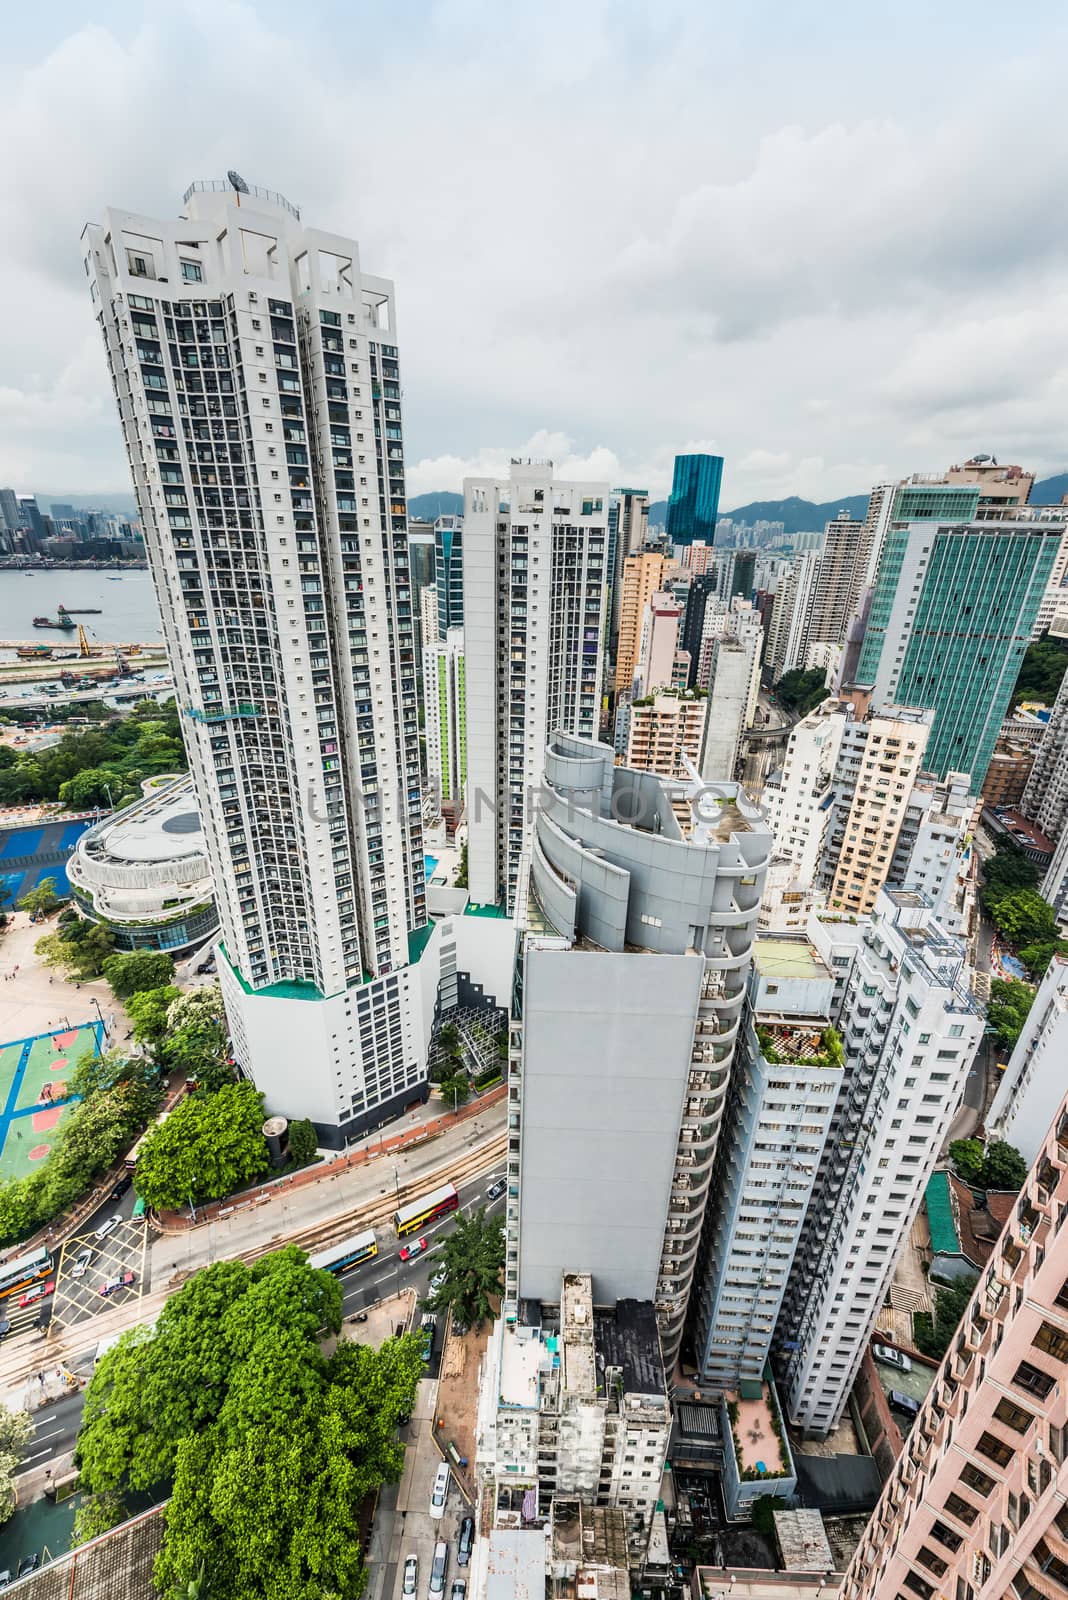 cityscape at Causeway Bay in Hong Kong